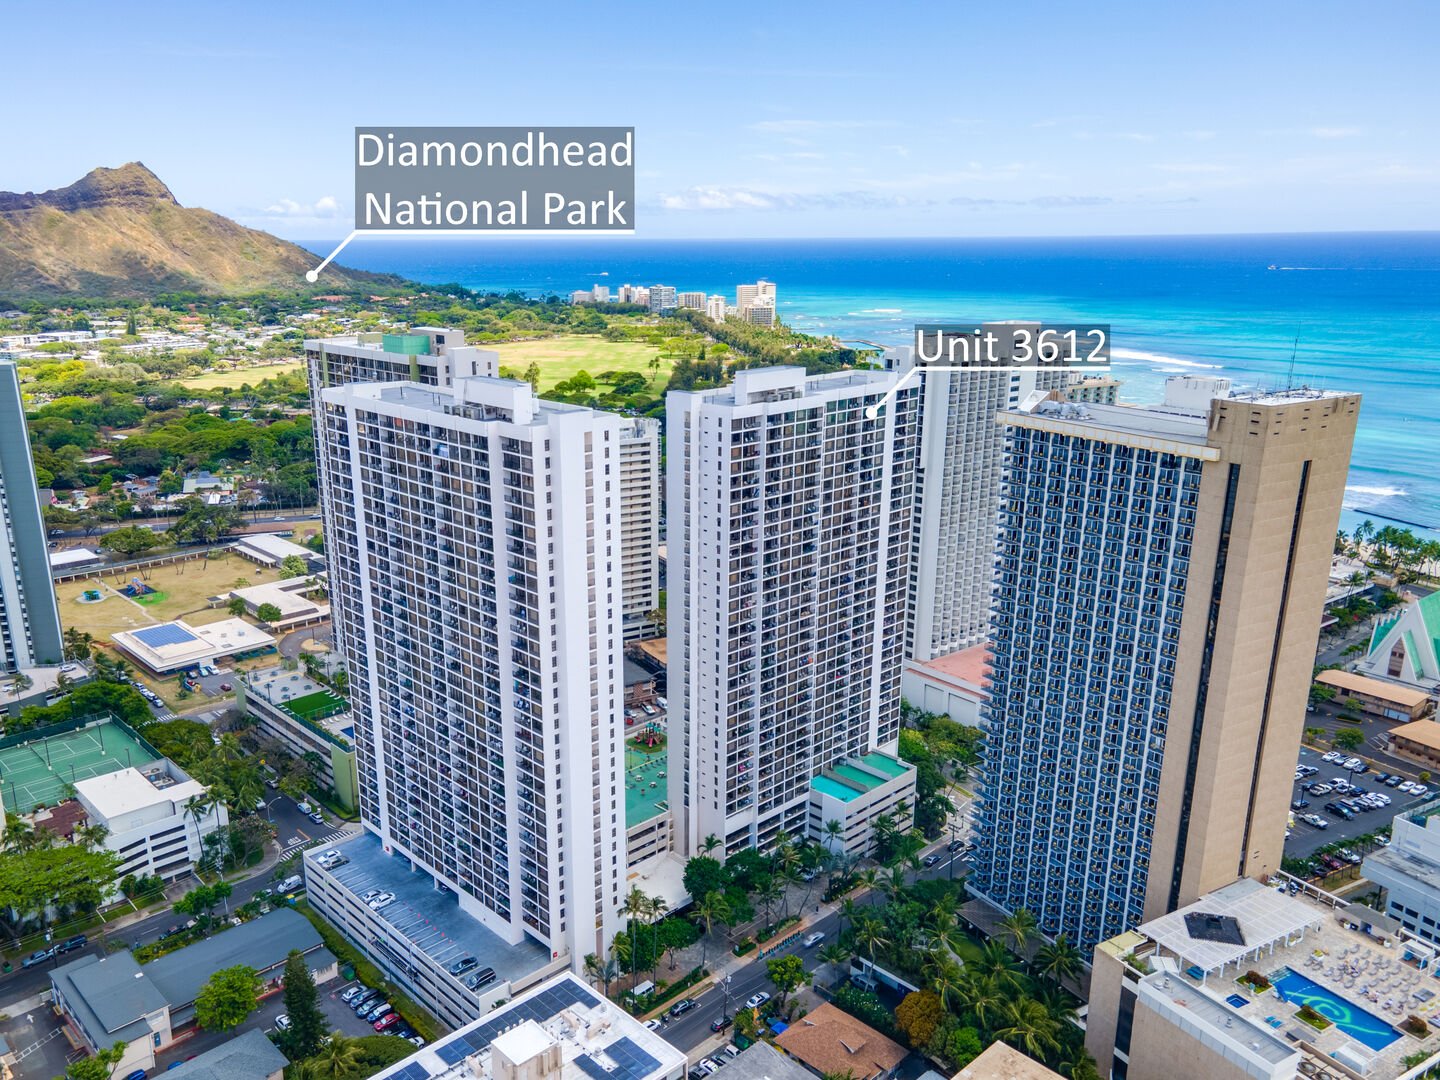 Location of the Waikiki Banyan